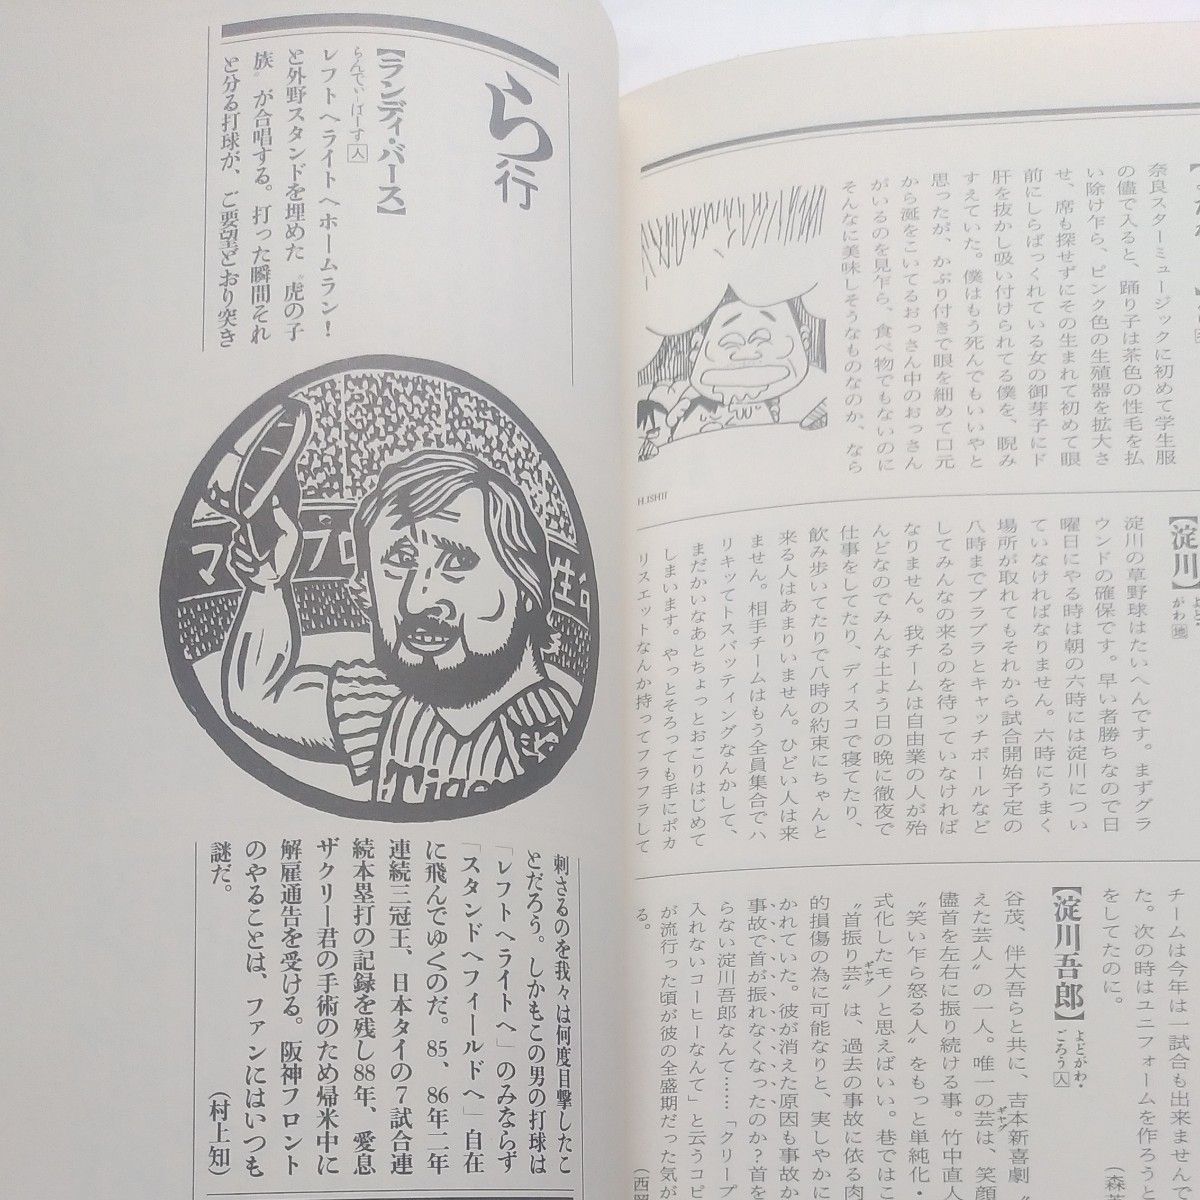 『大阪呑気大事典』第１版  JICC出版局 1988年9月第一刷発行 大阪都市辞書  阪神 南海 